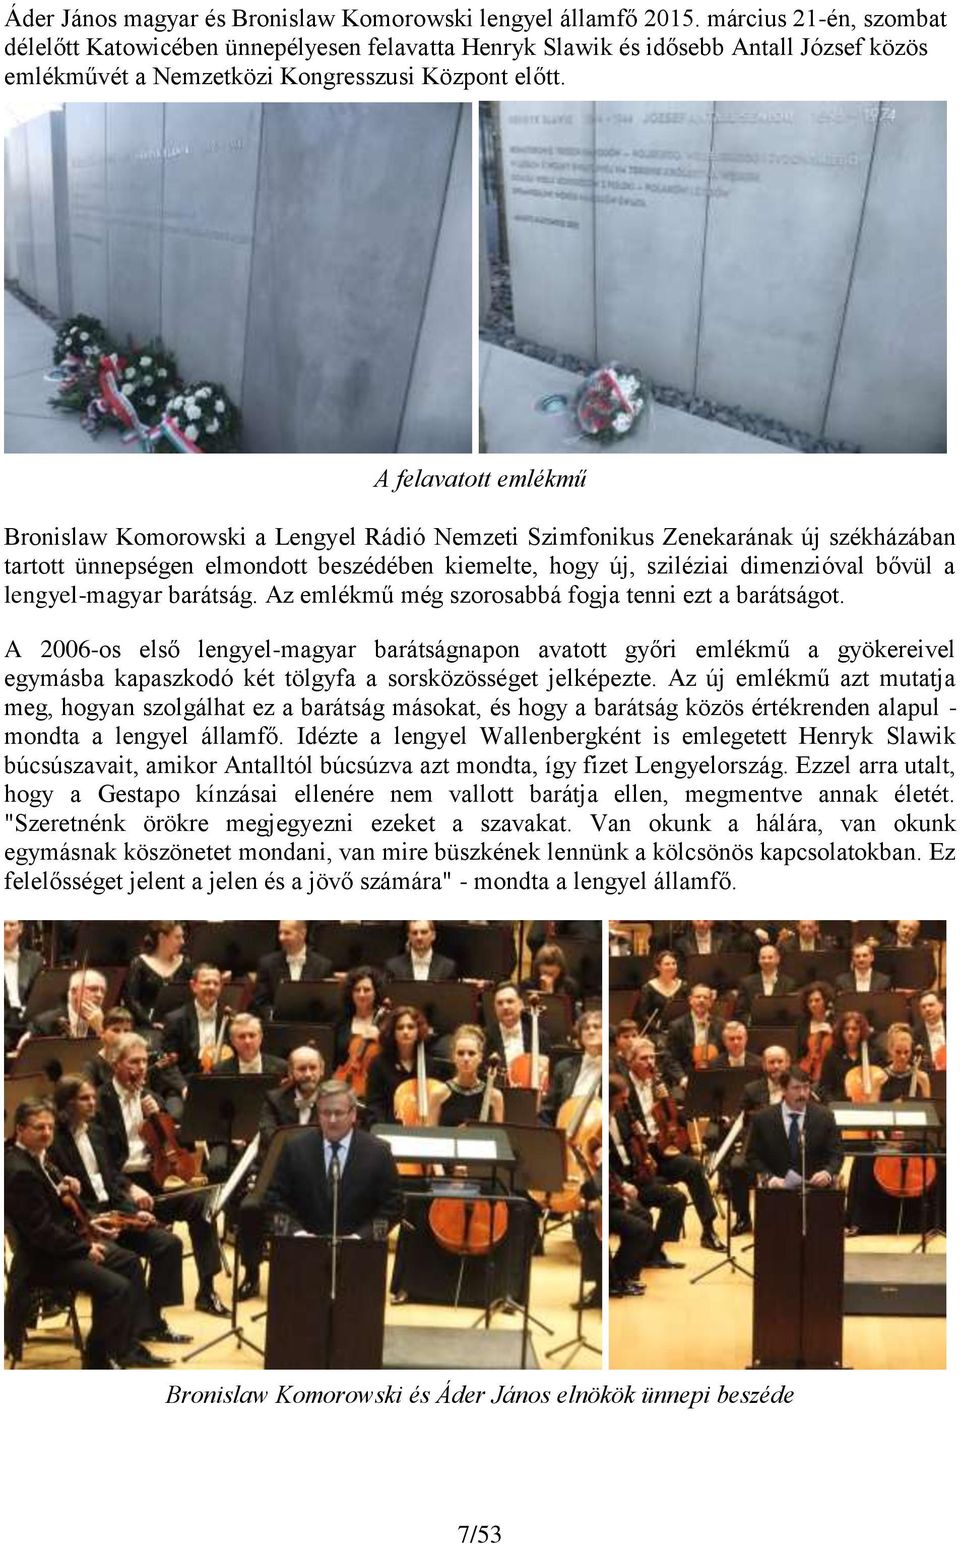 A felavatott emlékmű Bronislaw Komorowski a Lengyel Rádió Nemzeti Szimfonikus Zenekarának új székházában tartott ünnepségen elmondott beszédében kiemelte, hogy új, sziléziai dimenzióval bővül a